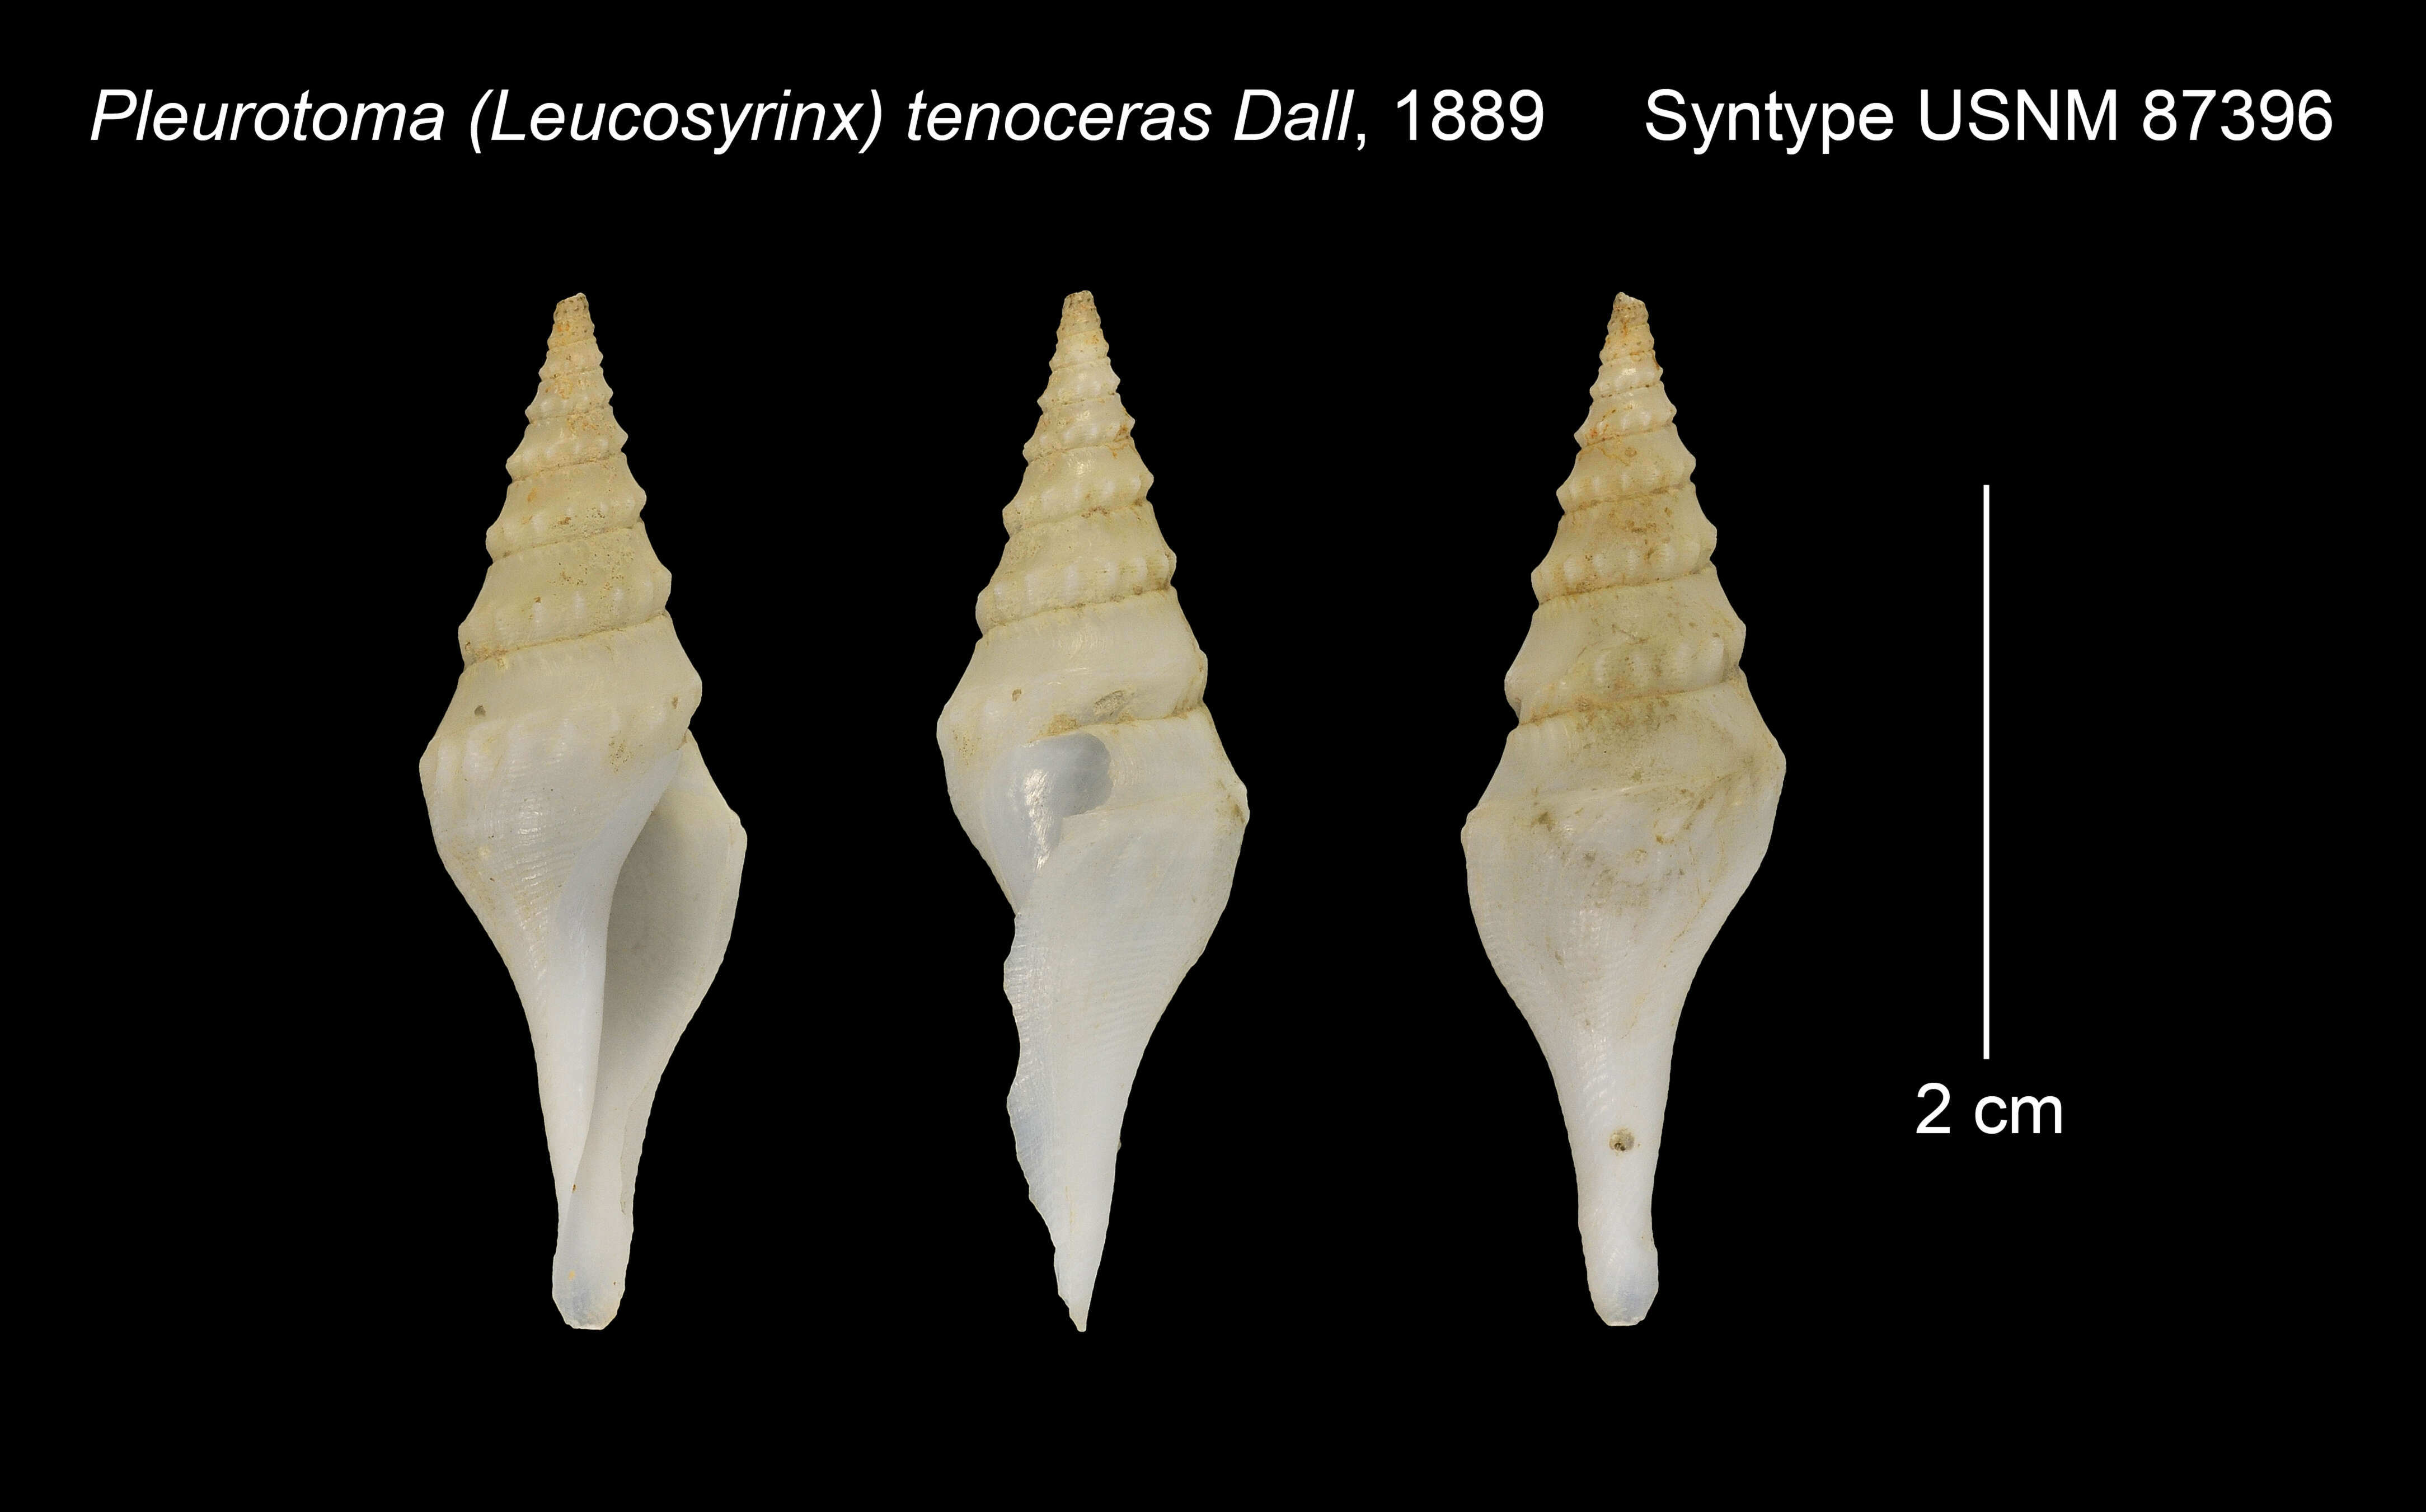 Image of Pleurotoma tenoceras Dall 1889